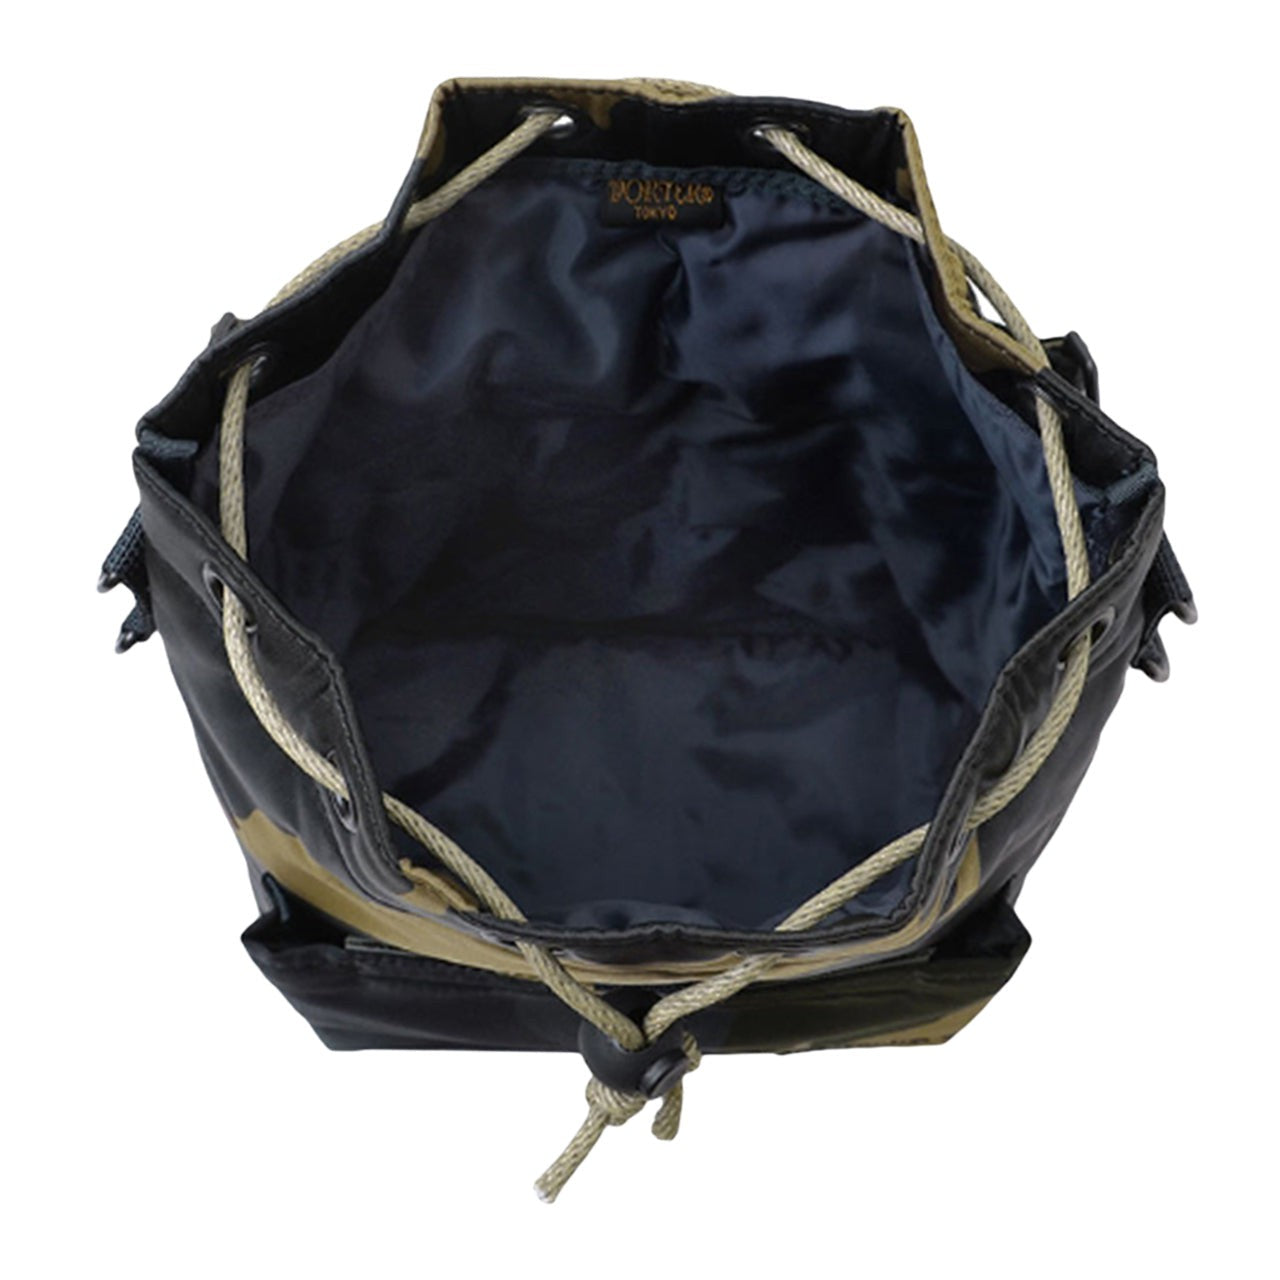 Porter by Yoshida Porter by Yoshida Balloon Sac / Counter Shade Bag (Camo) 381-18191-33